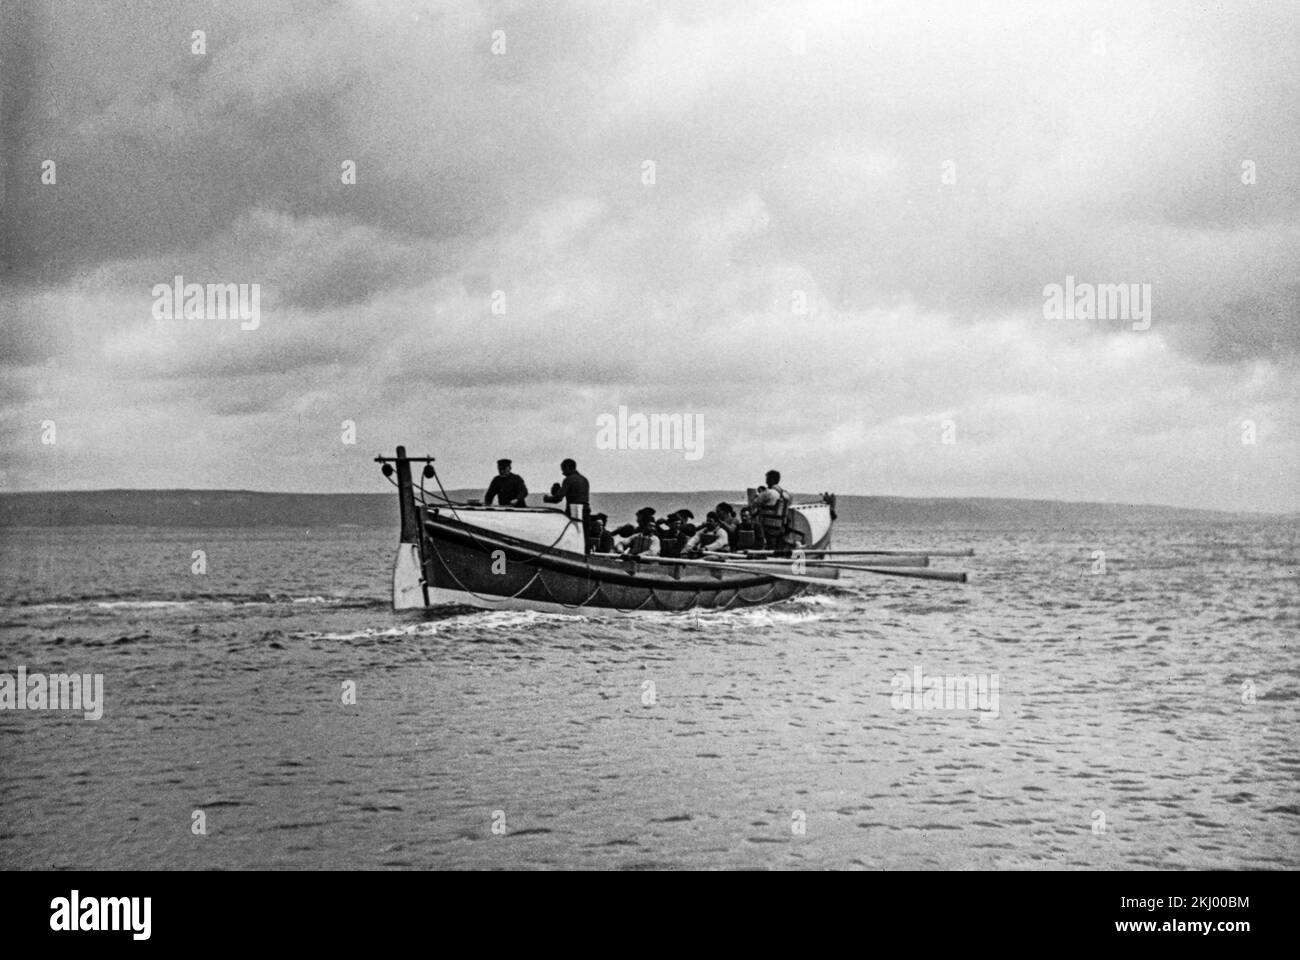 Una fotografía en blanco y negro de finales del siglo 19th o principios del siglo 20th que muestra un barco de la vida siendo recortado por un miembro de la institución nacional real del bote salvavidas, en aguas costeras de Inglaterra. Foto de stock